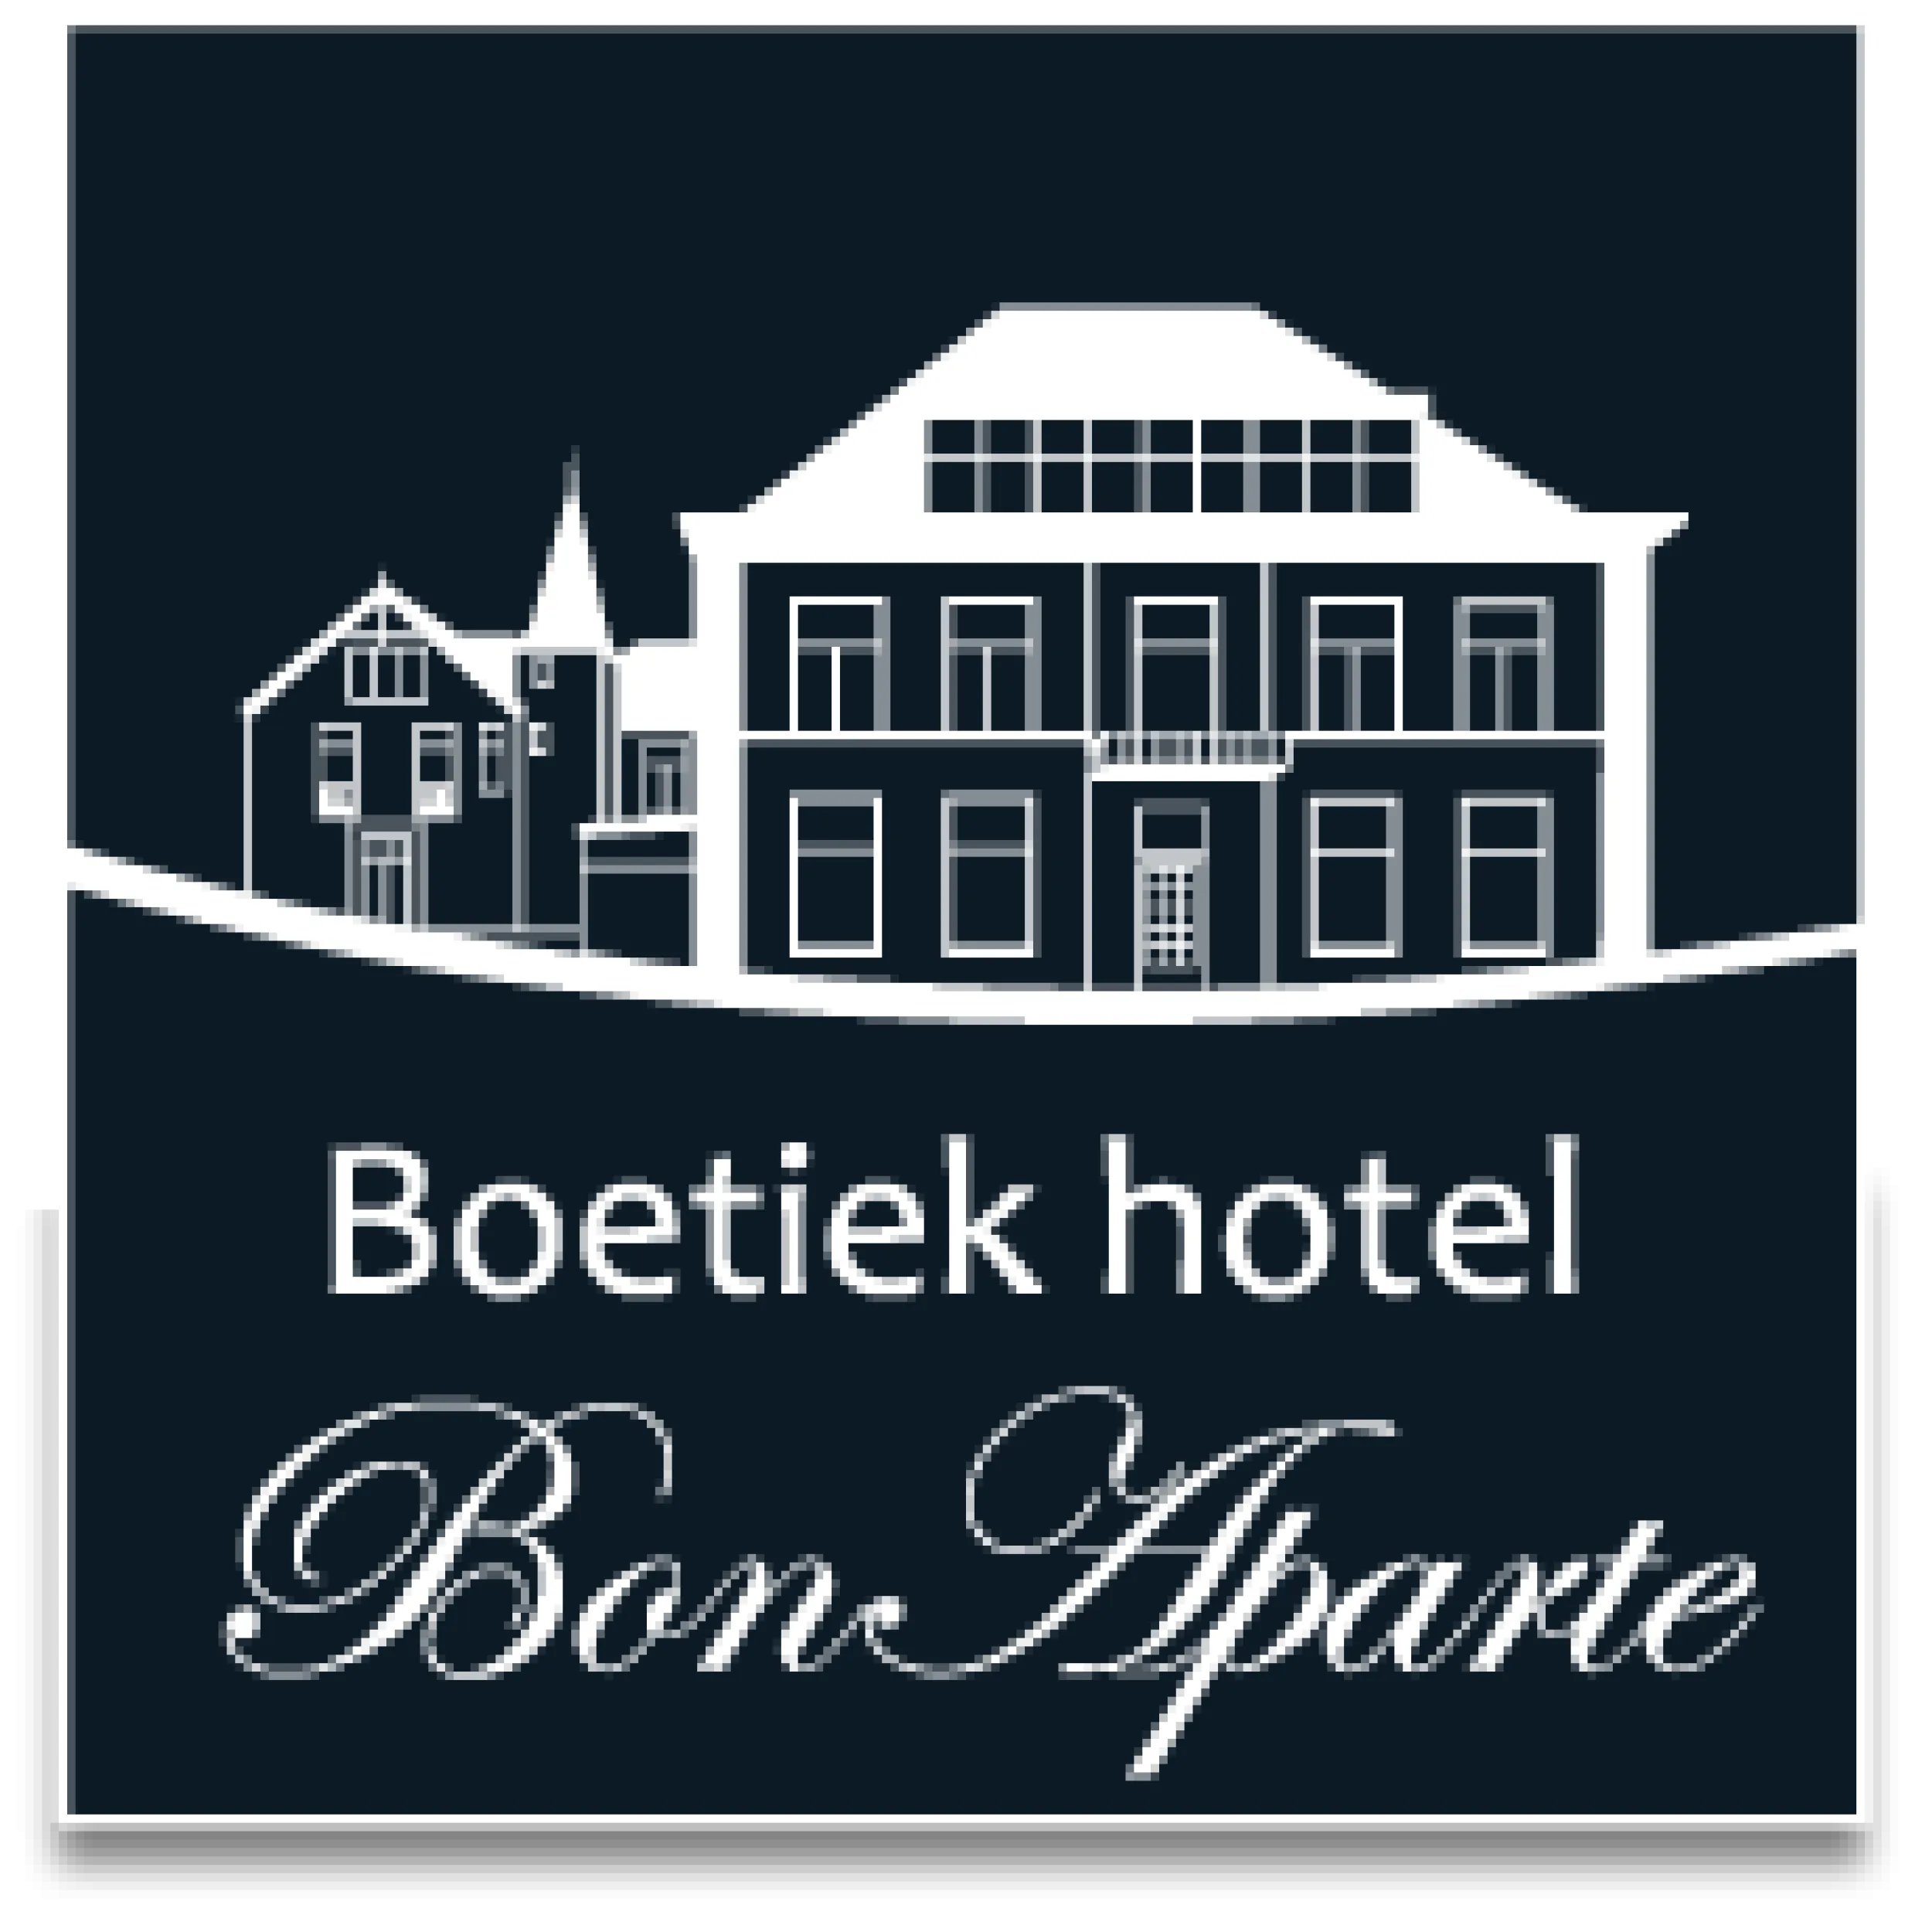 Boetiek hotel Bon Aparte